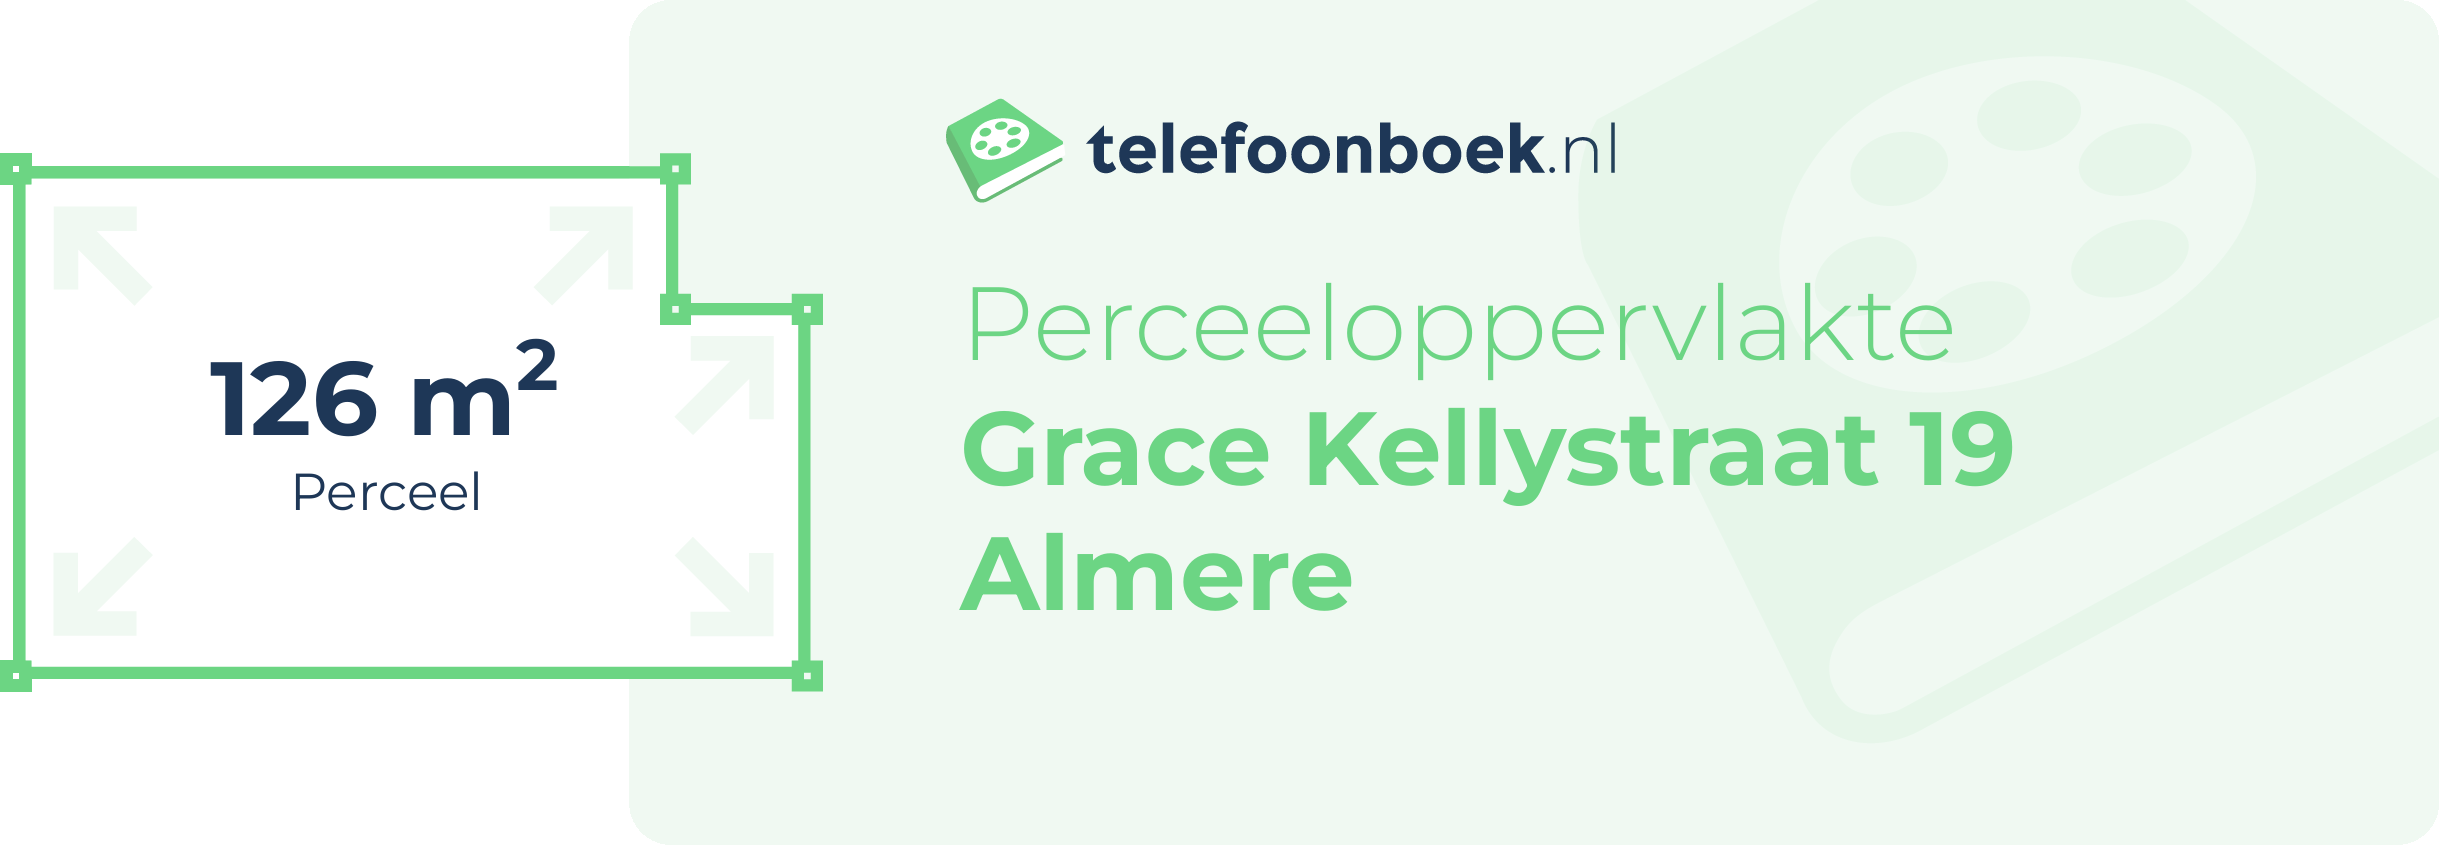 Perceeloppervlakte Grace Kellystraat 19 Almere